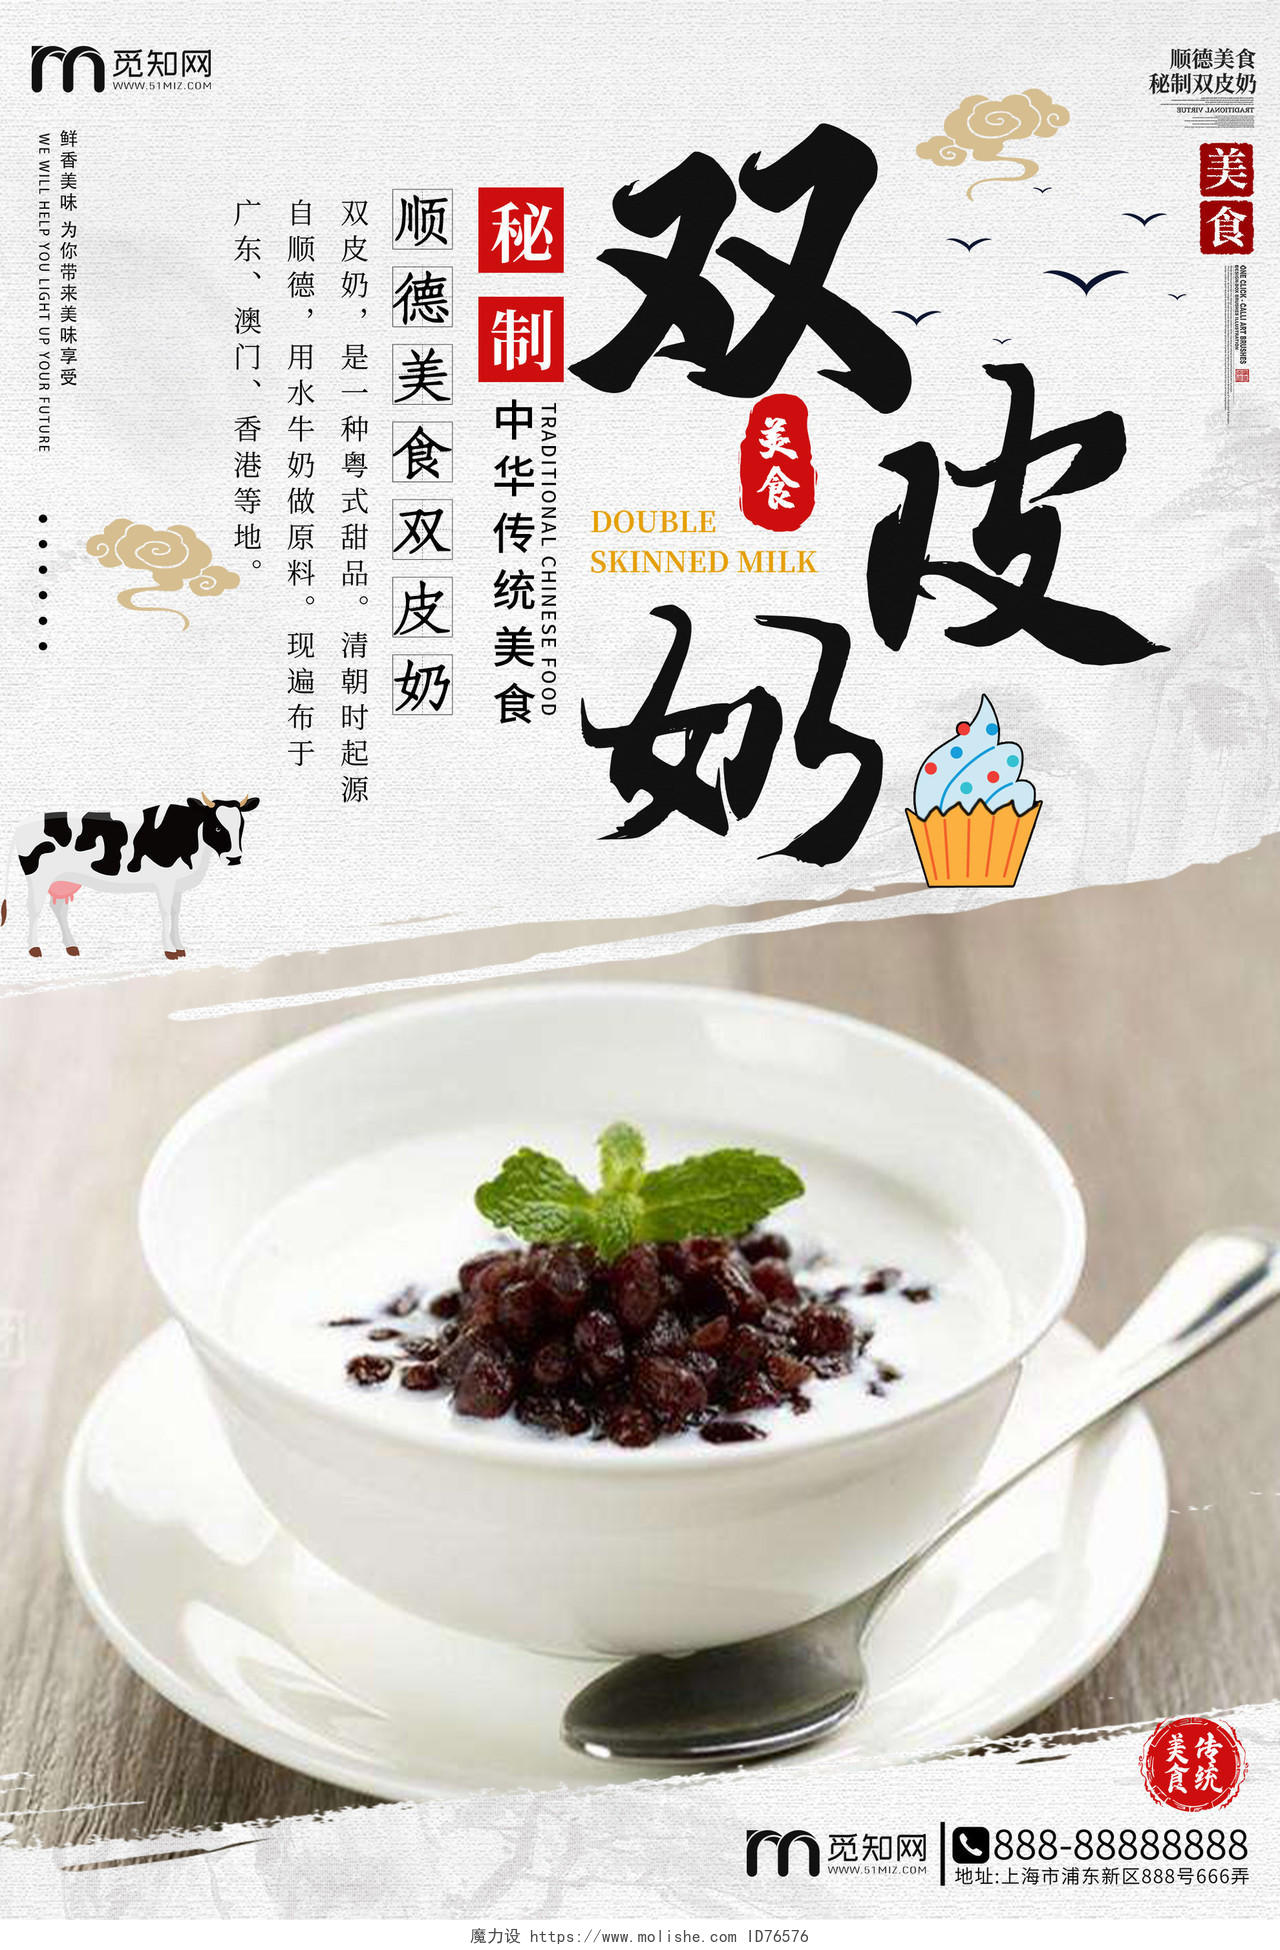 灰色水墨秘制中华传统美食双皮奶海报广州广东美食双皮奶